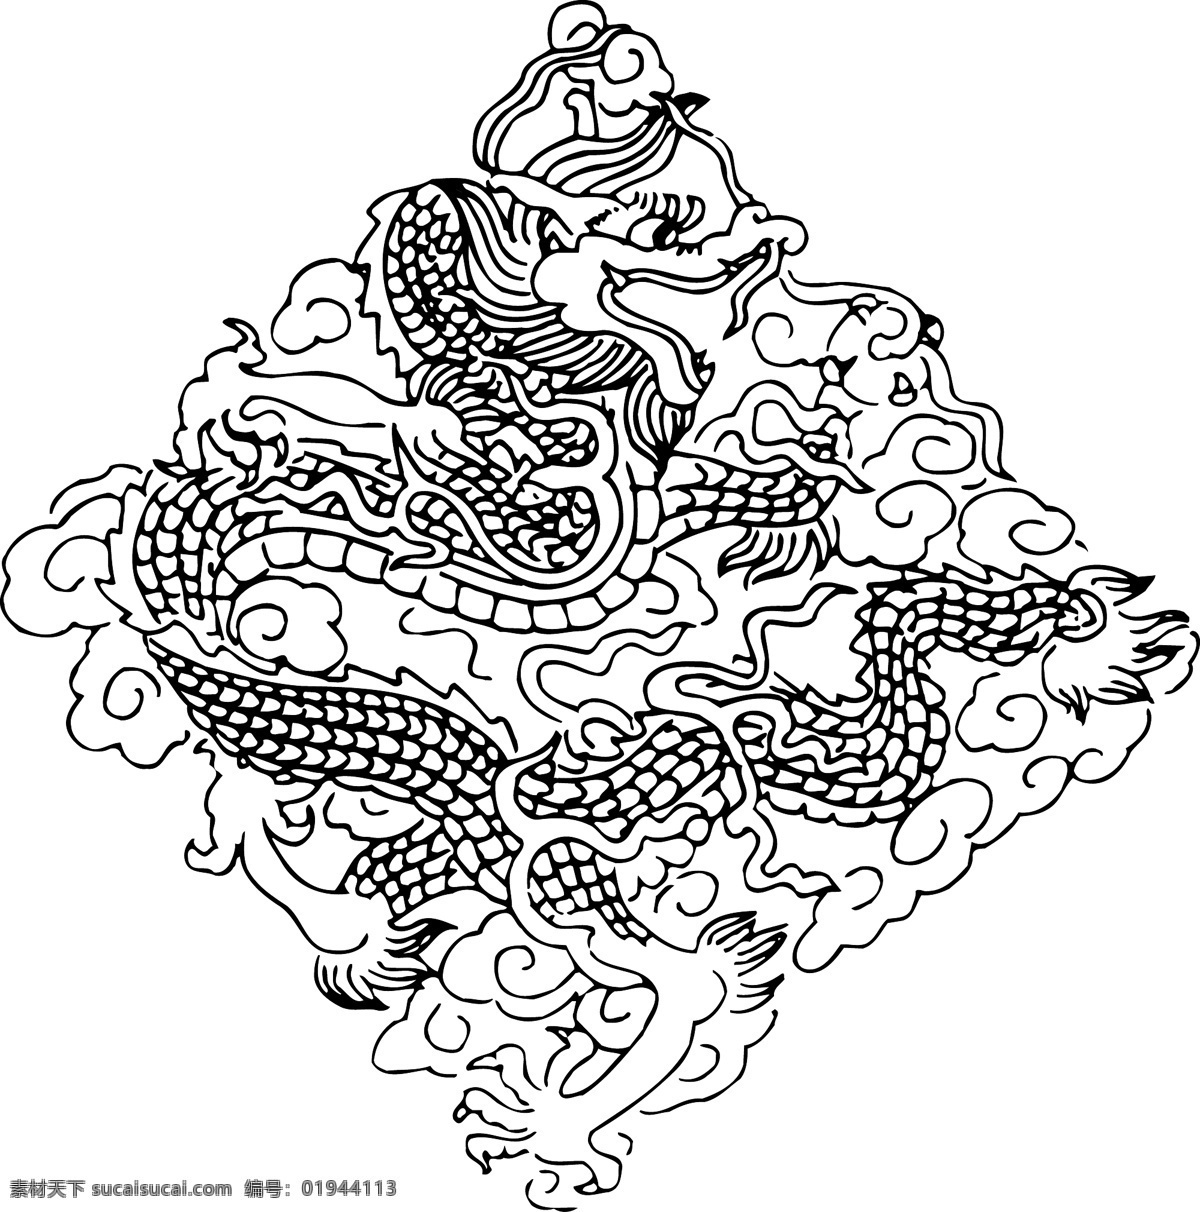 龙 彩龙 矢量龙 中国龙 龙纹 文化艺术 传统文化 龙年 龙纹素材 广告